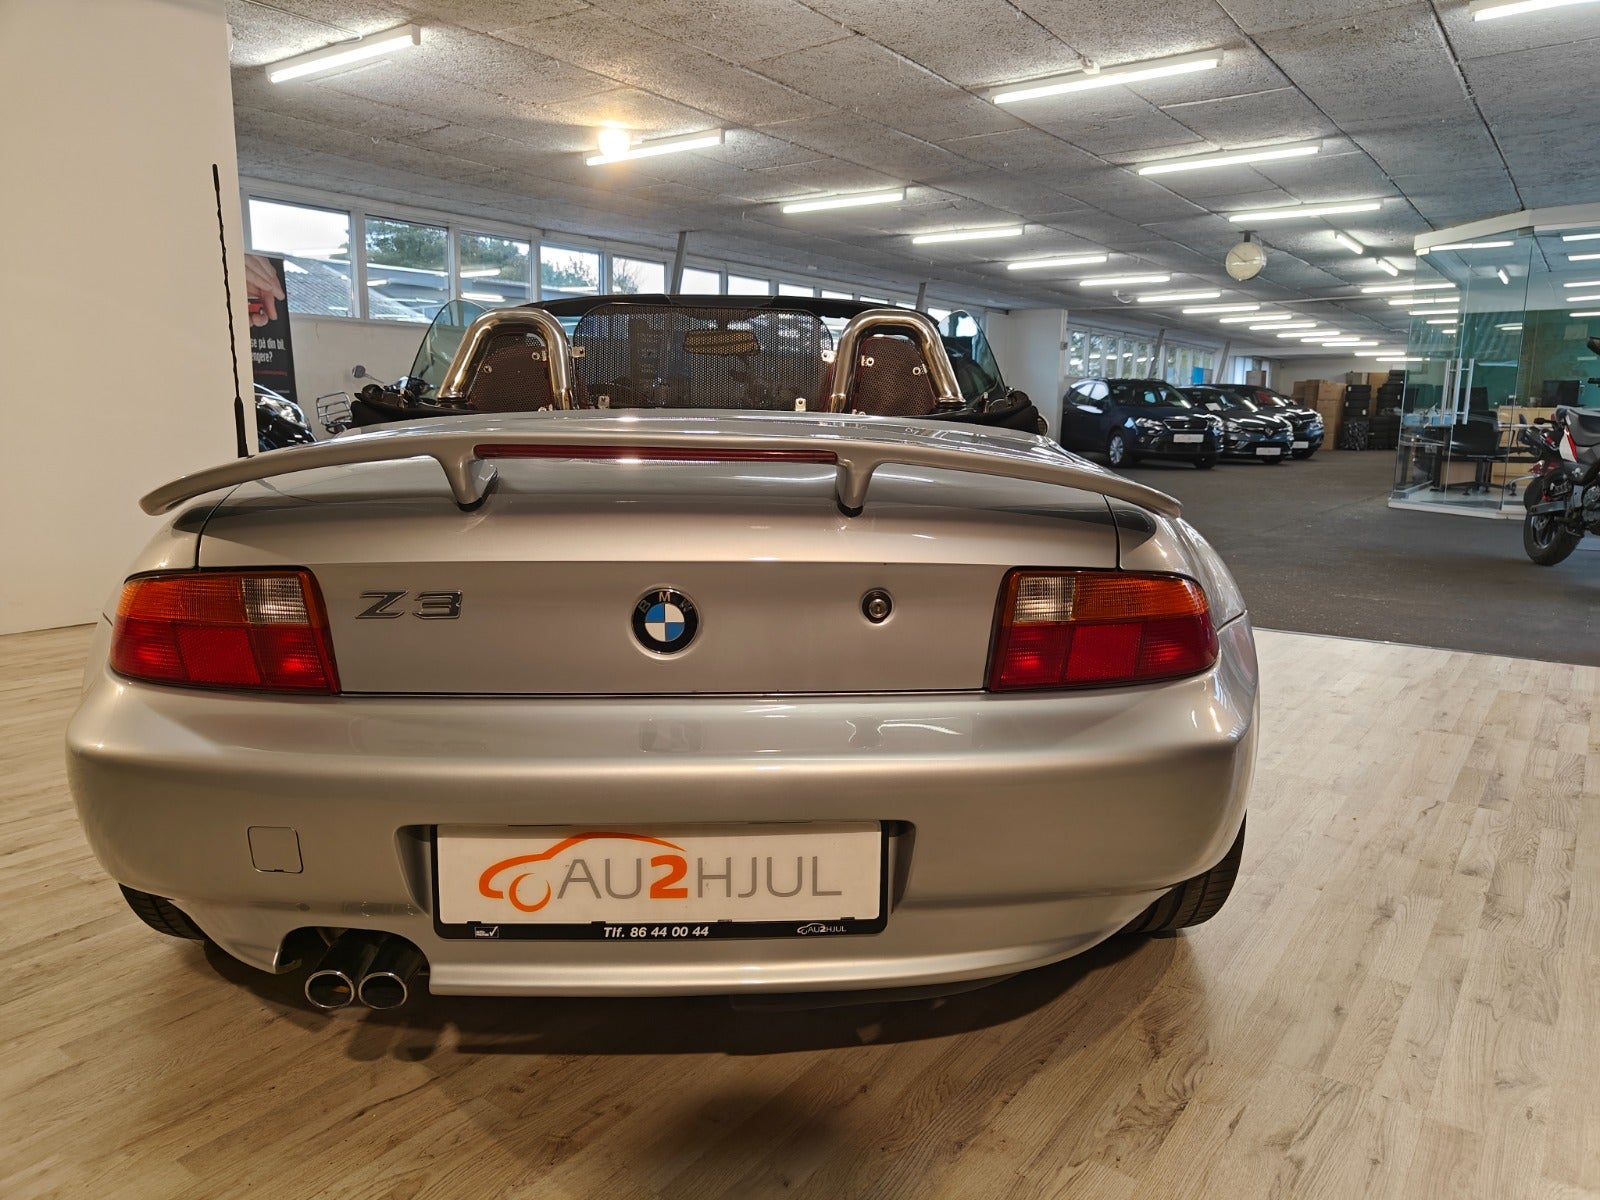 BMW Z3 1997